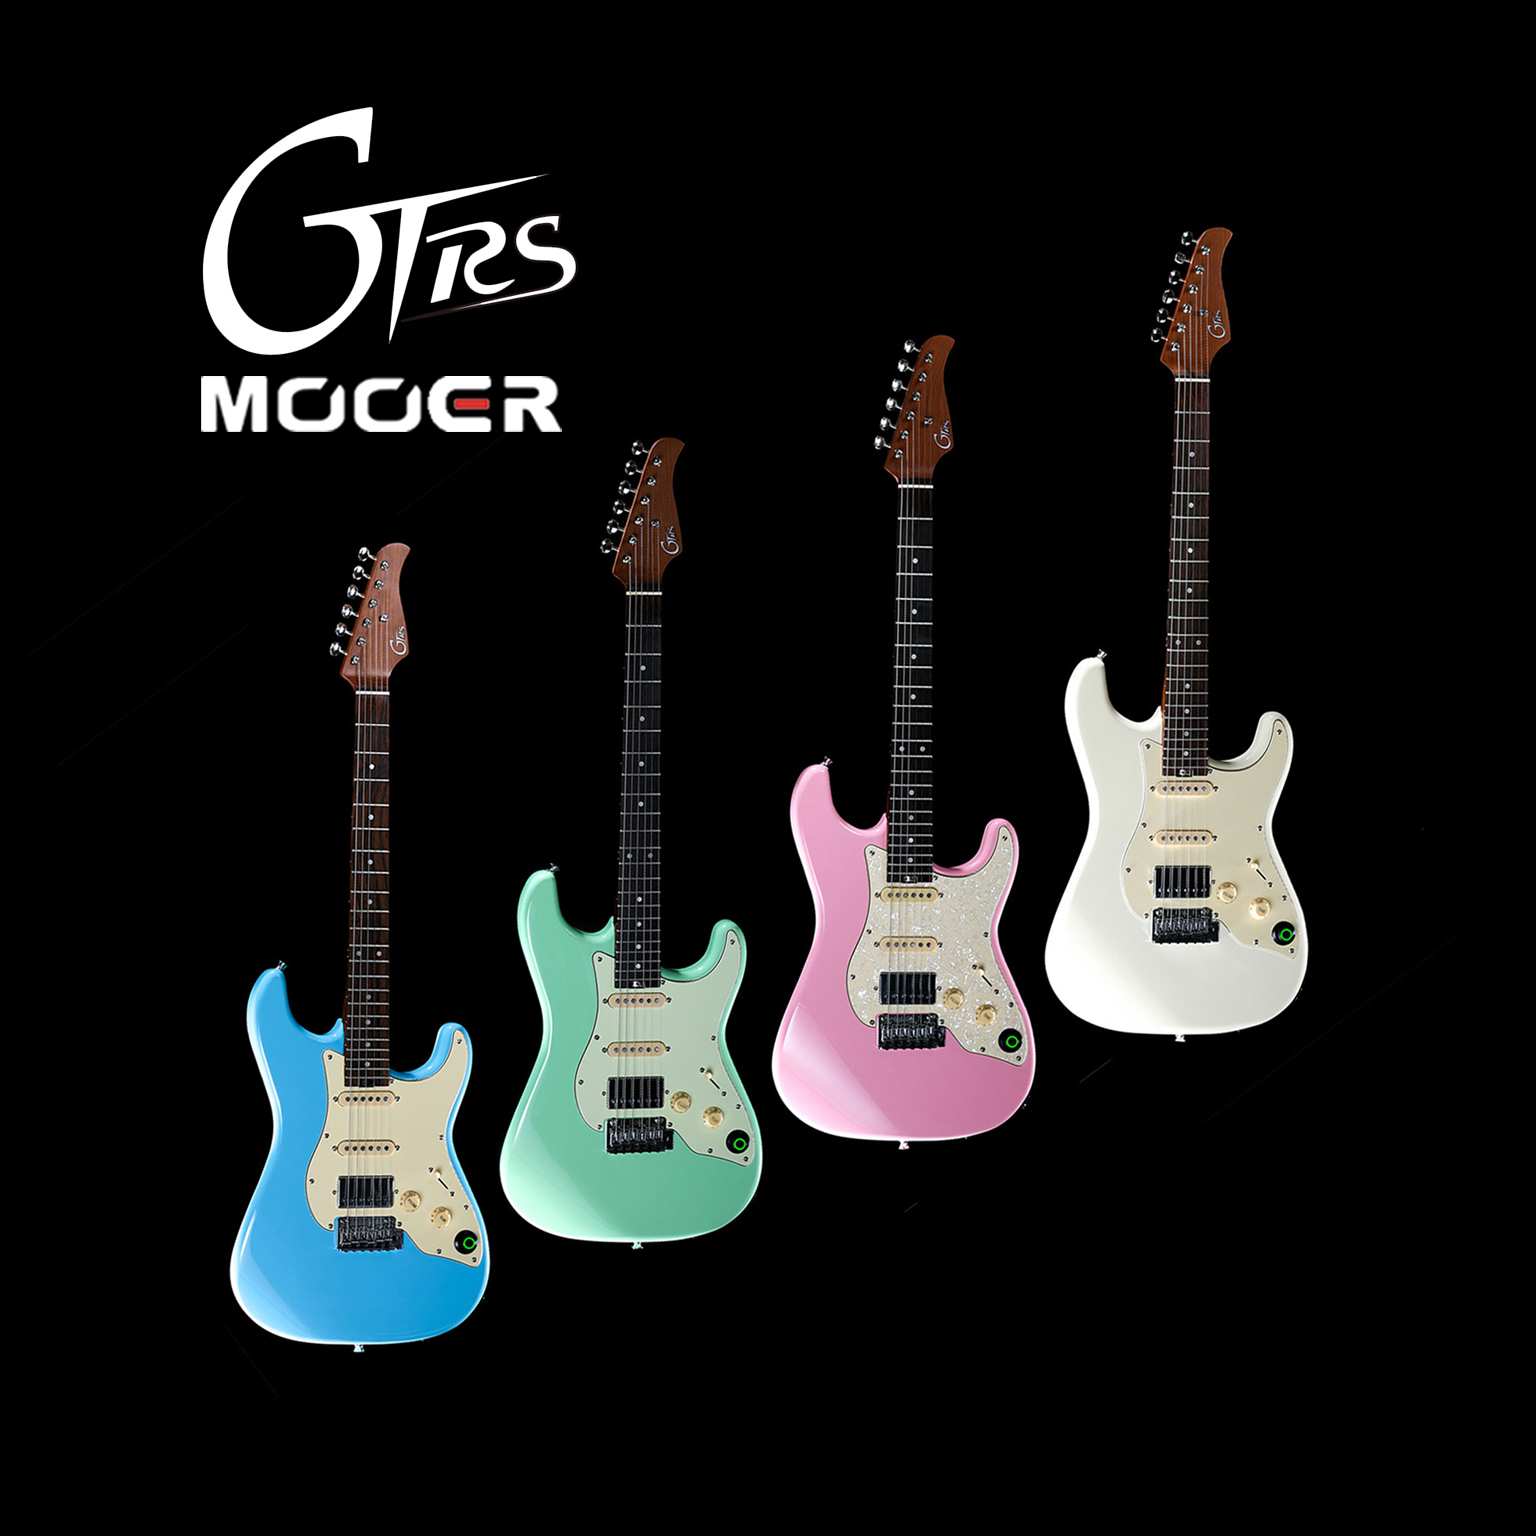 MOOER guitars GTRS